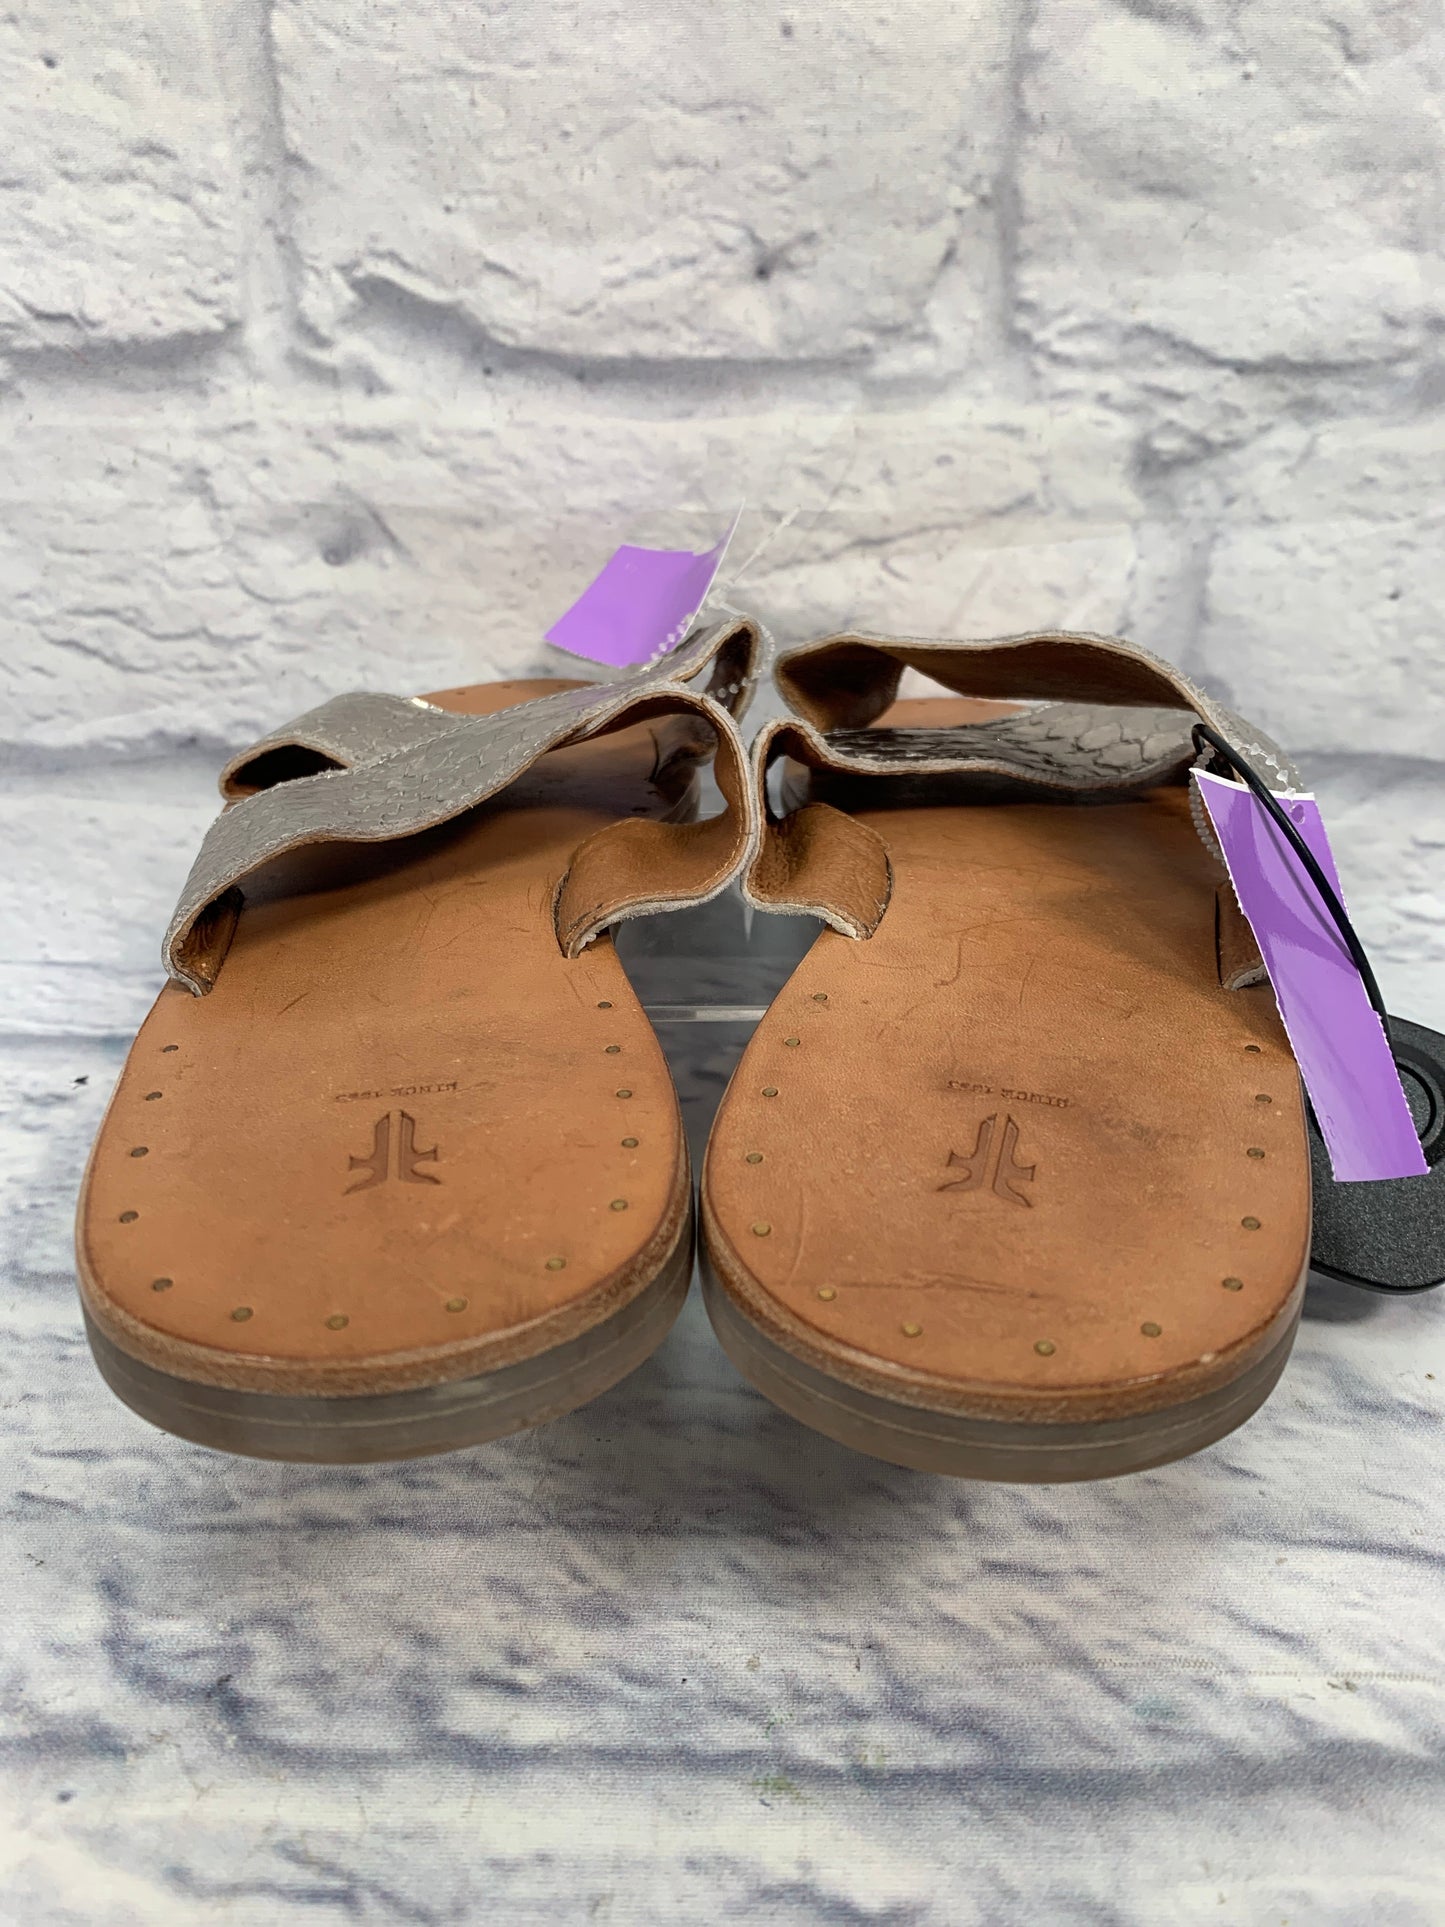 Silver Sandals Designer Frye, Size 9